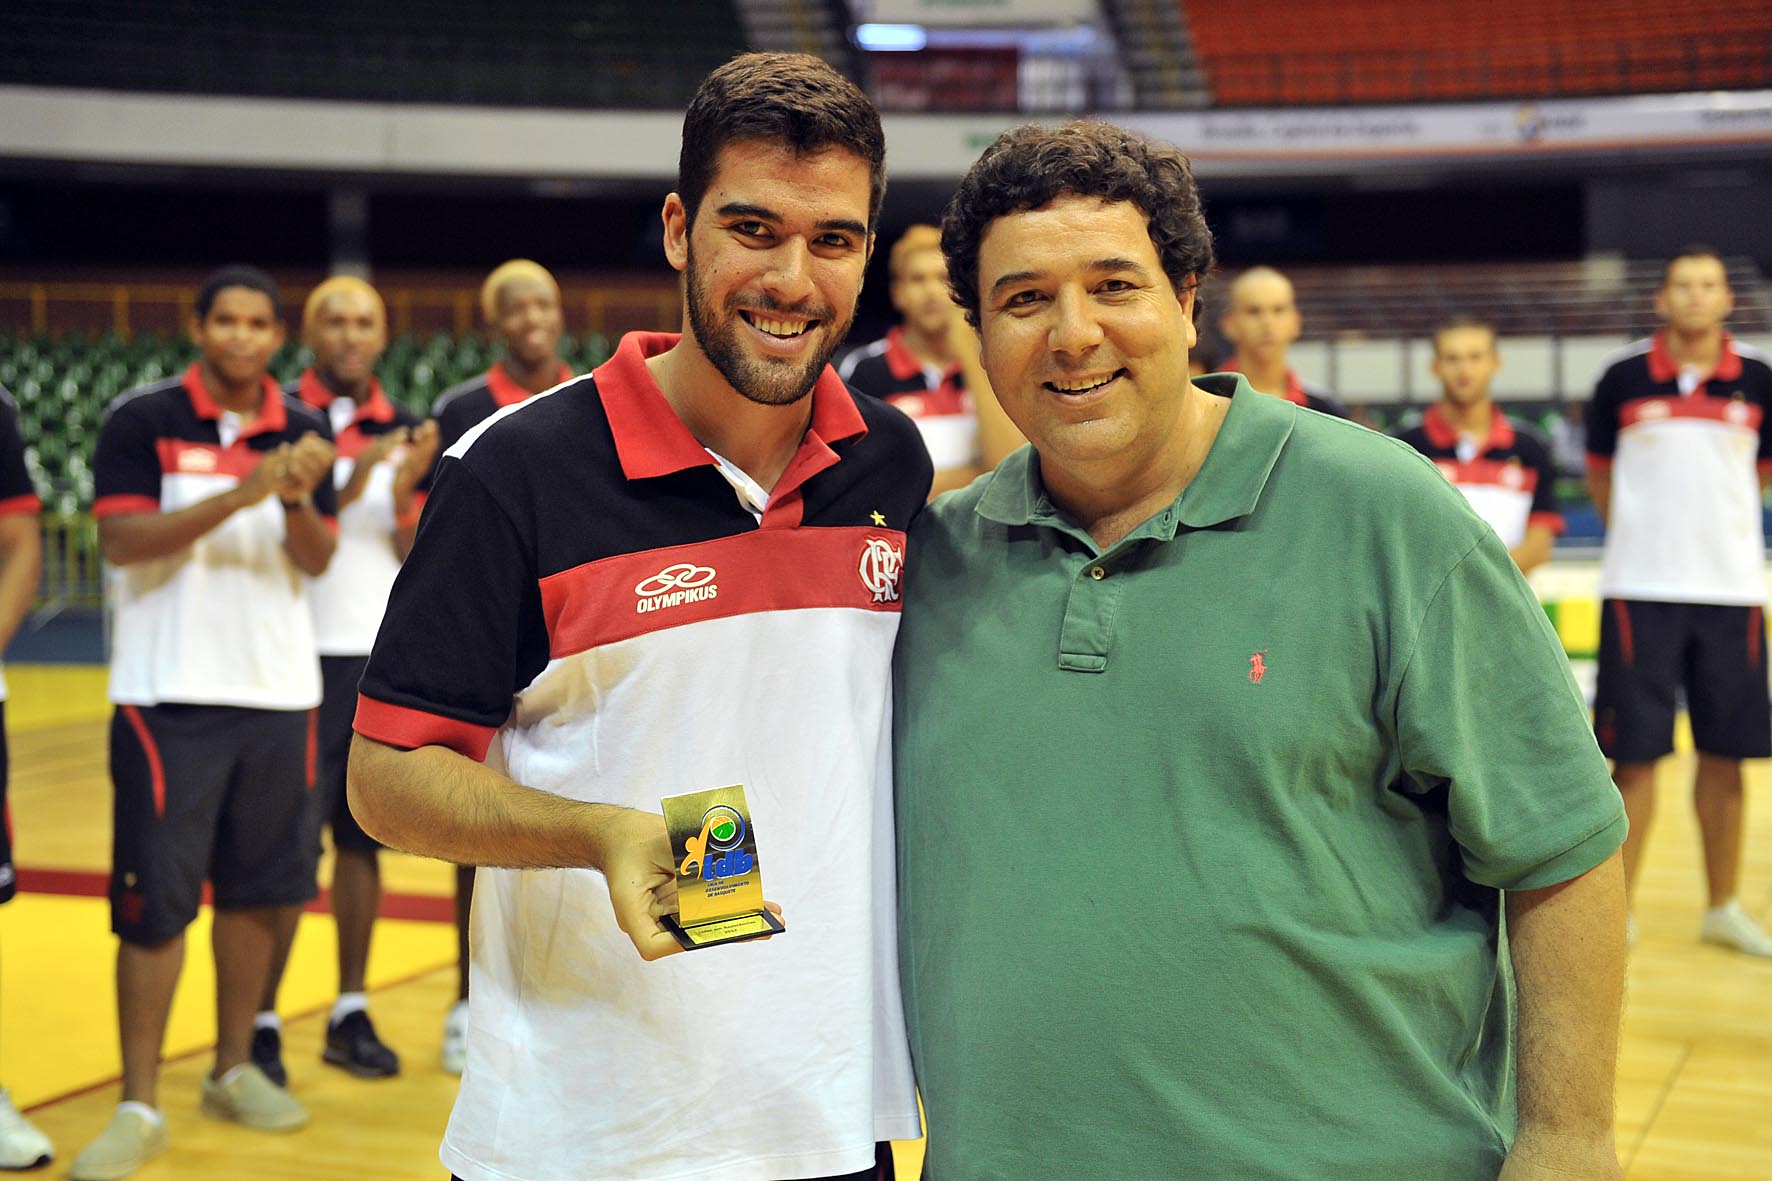 Gegê com o troféu de líder de assistências da última temporada da LDB (João Pires/LNB)